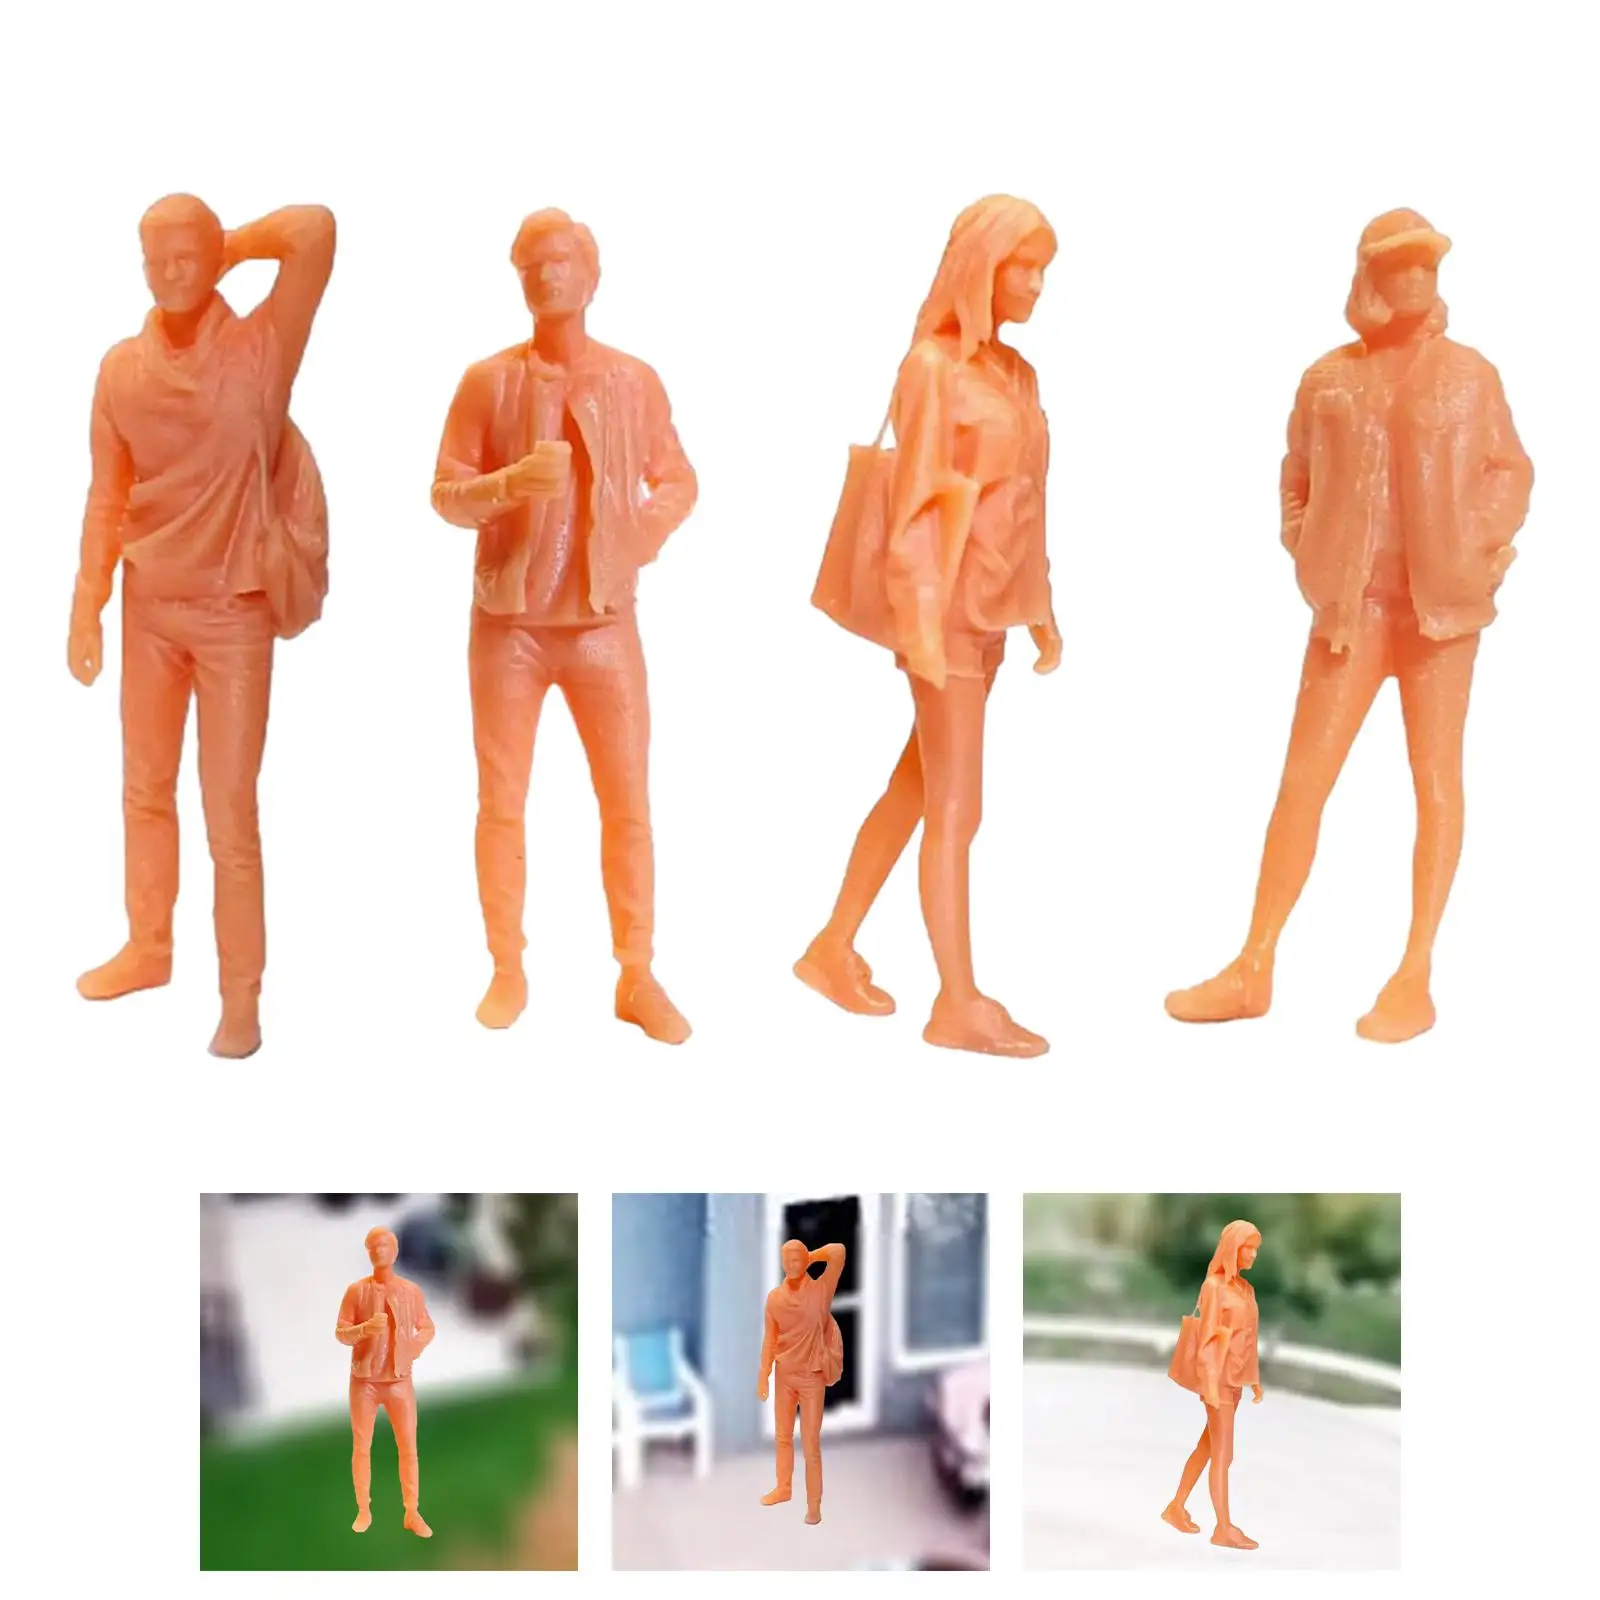 1/64 Diorama Figure People Figurines Collection Resin Desk Decoration Handmade Diorama Figure Scene Props Doll Figures Decor